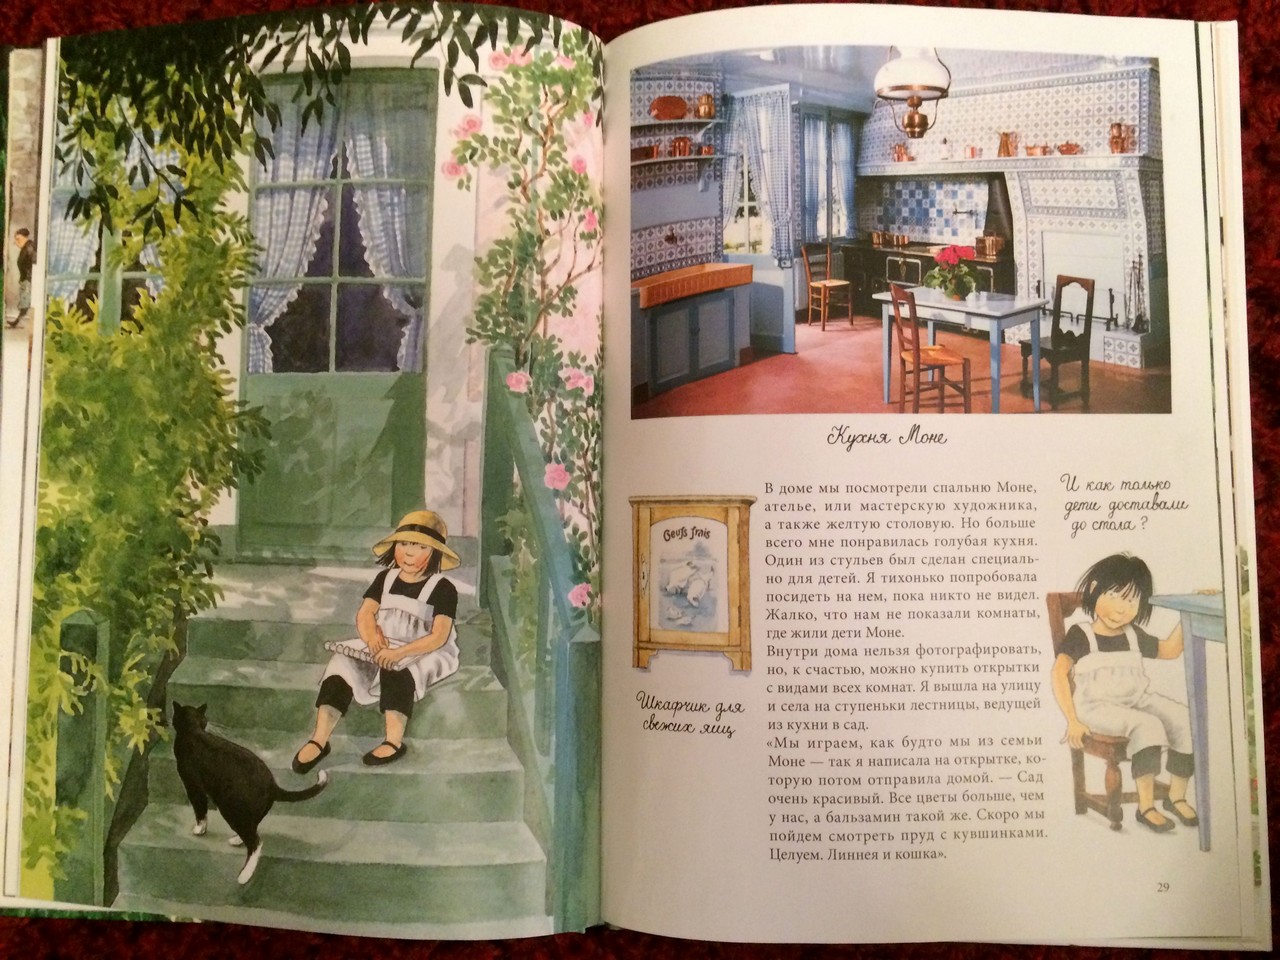 5 причин художникам читать детские книги | Nadin Piter Надин Питер блог Нади Демкиной